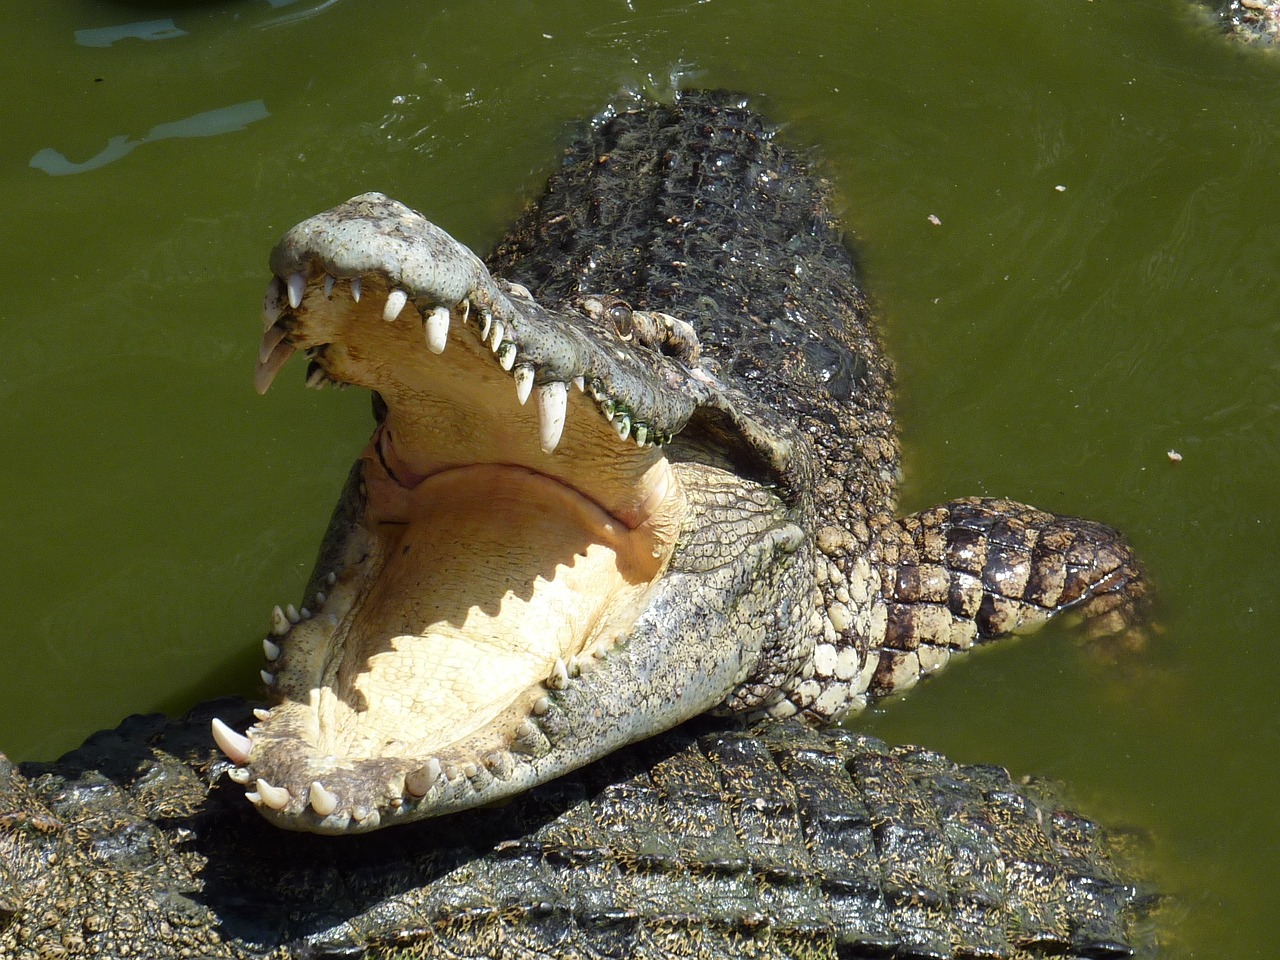 Facts About Crocodile In Hindi: मगरमच्छ के बारे में हैरान करने वाले रोचक तथ्य 